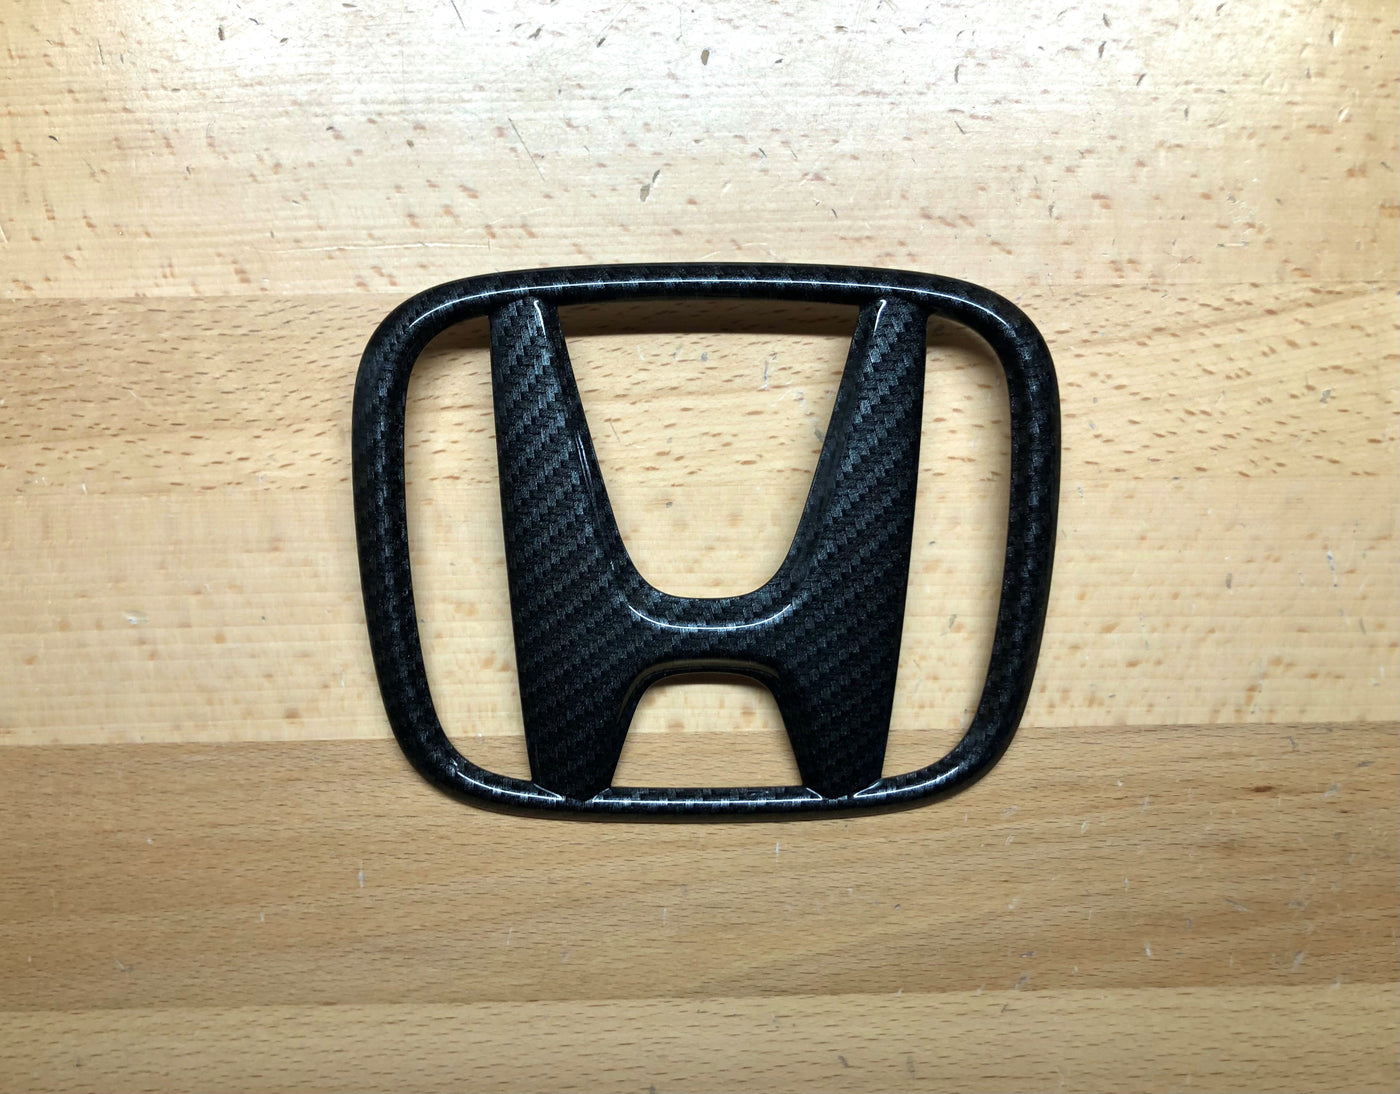 Honda Accord CR-V Pilot Carbon Fiber Front Grille Emblem